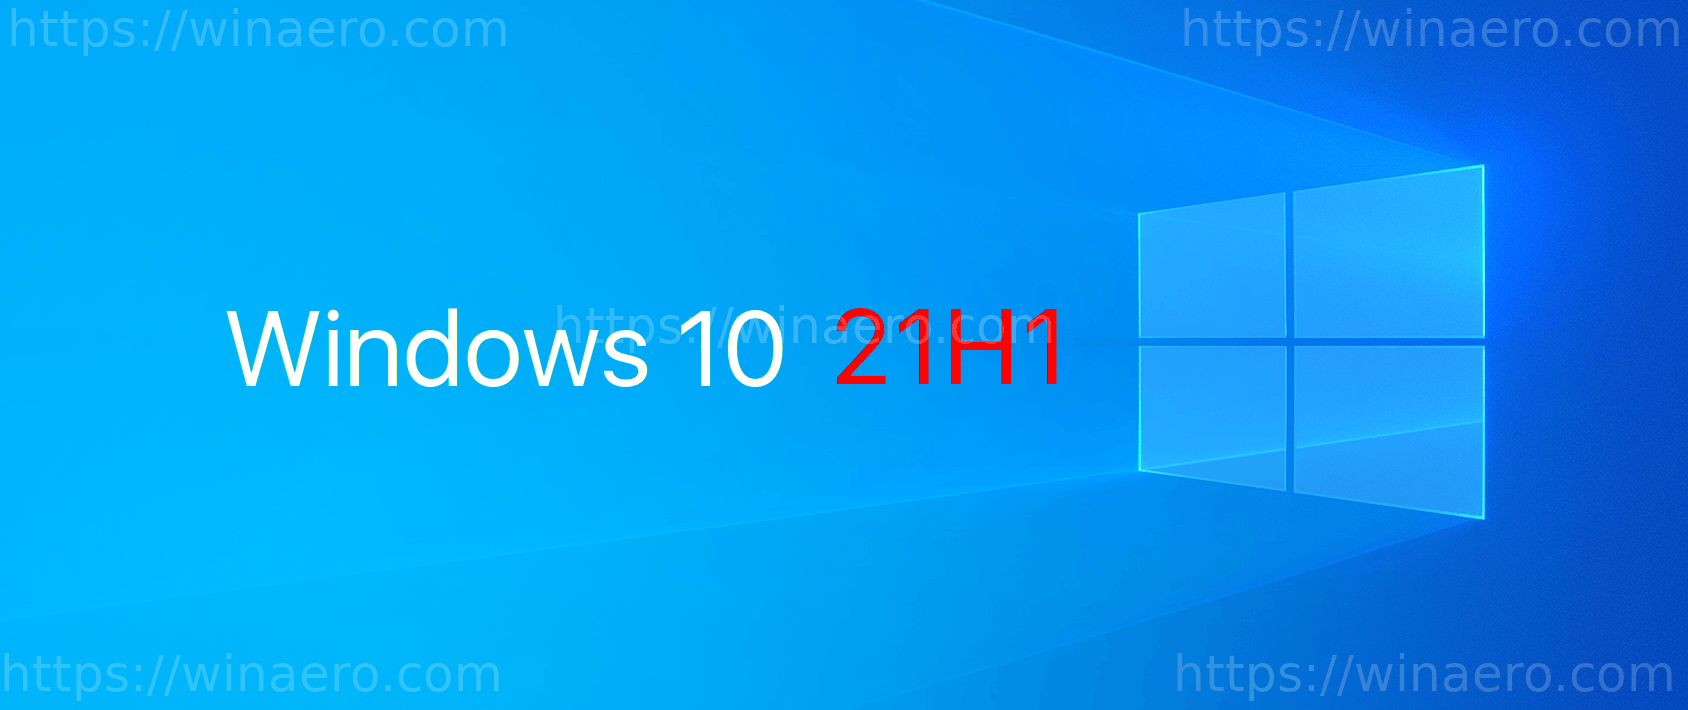 Windows 10 21H1 Banner 